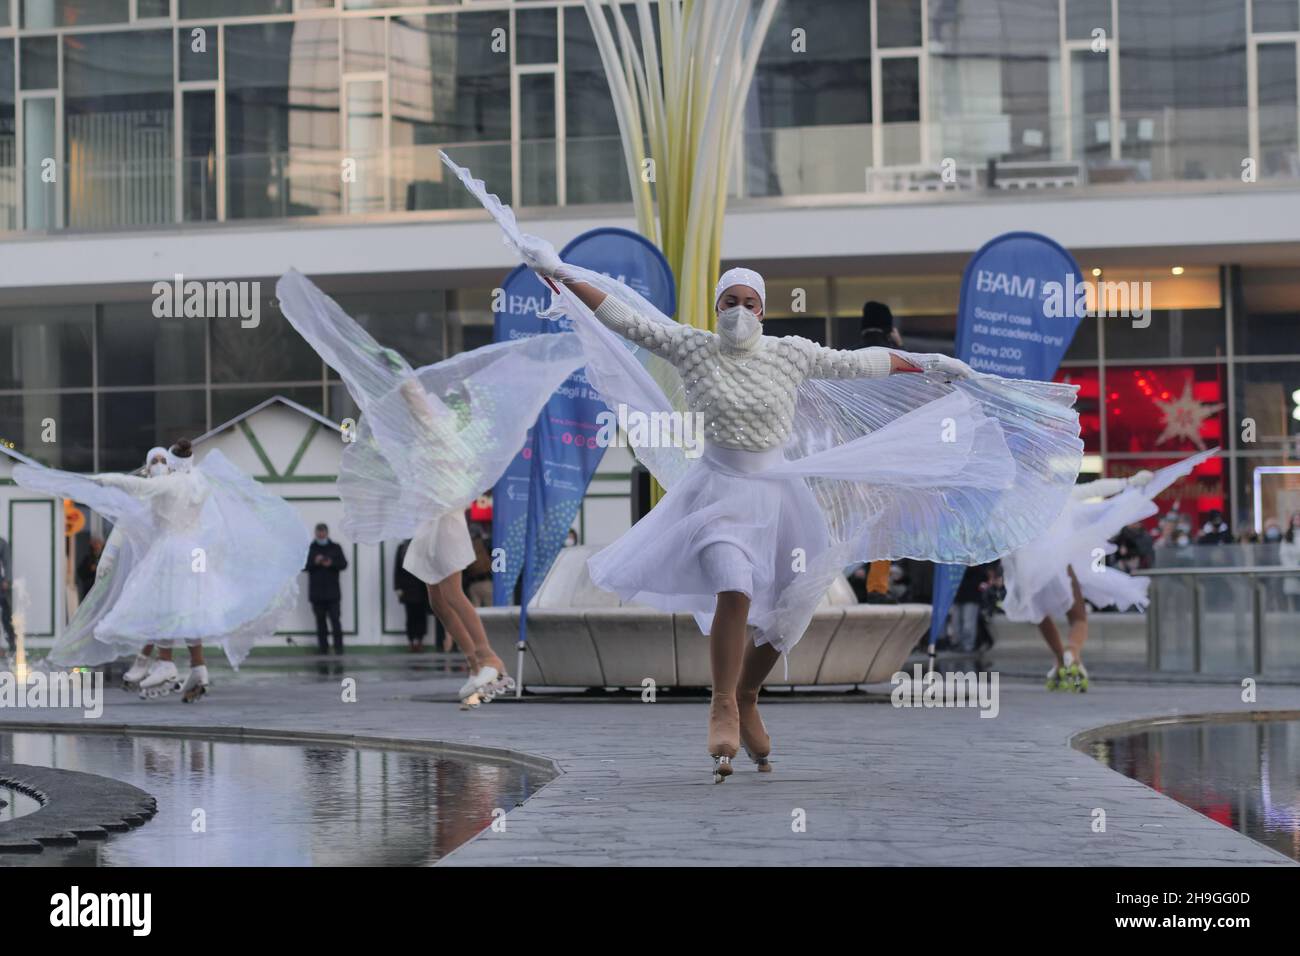 Ausstellung von Eiskunstlauf-Tänzern auf dem Gae Aulenti Platz in Mailand, Lombardei, Italien Stockfoto